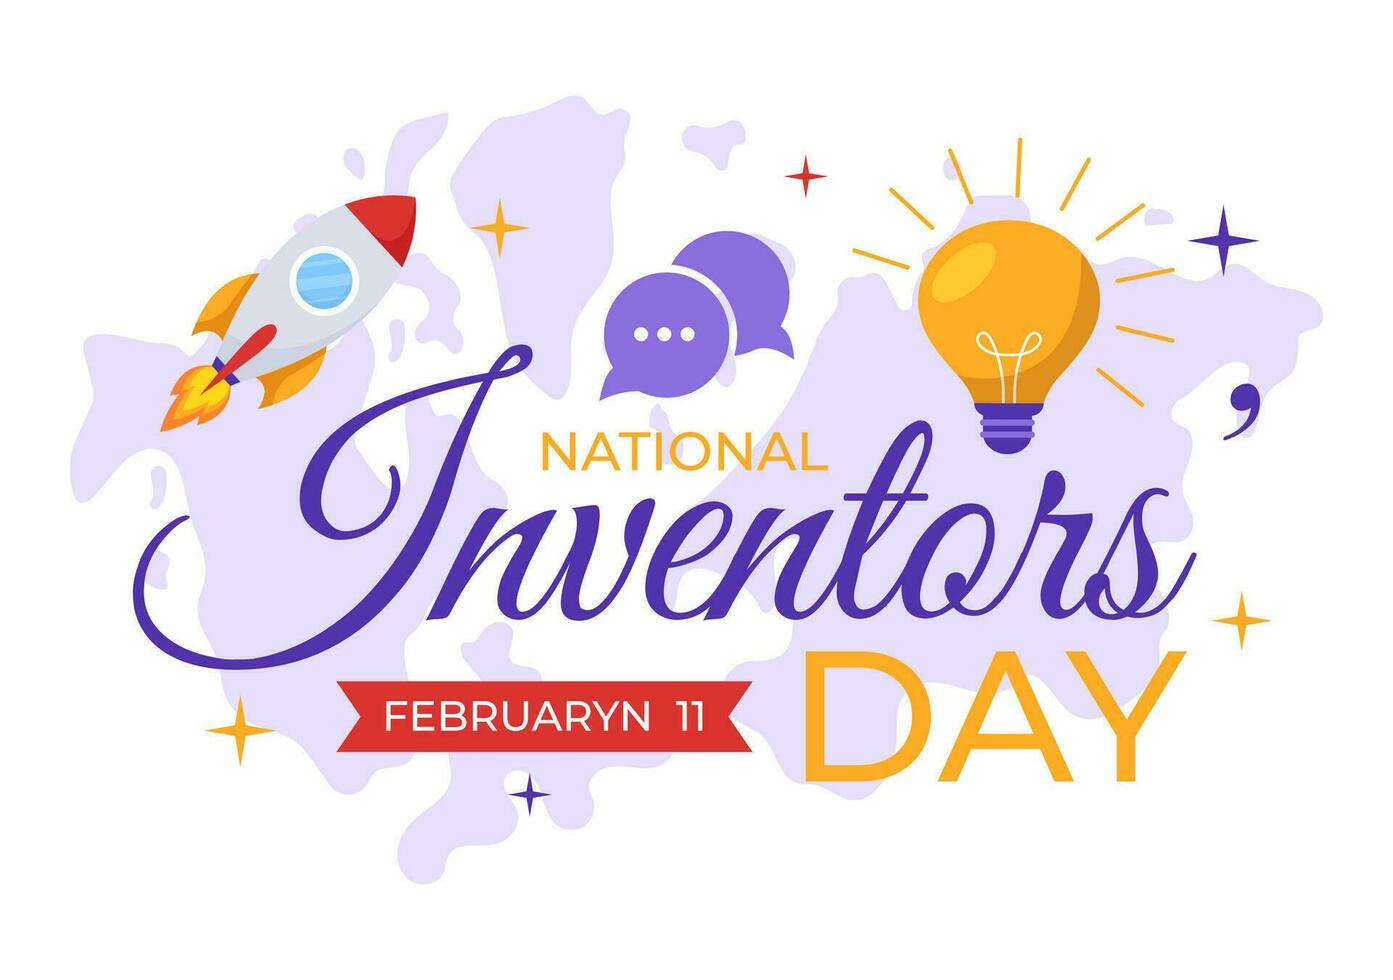 nationale inventeurs journée vecteur illustration sur février 11 fête de génie innovation à honneur créateur de science dans plat dessin animé Contexte